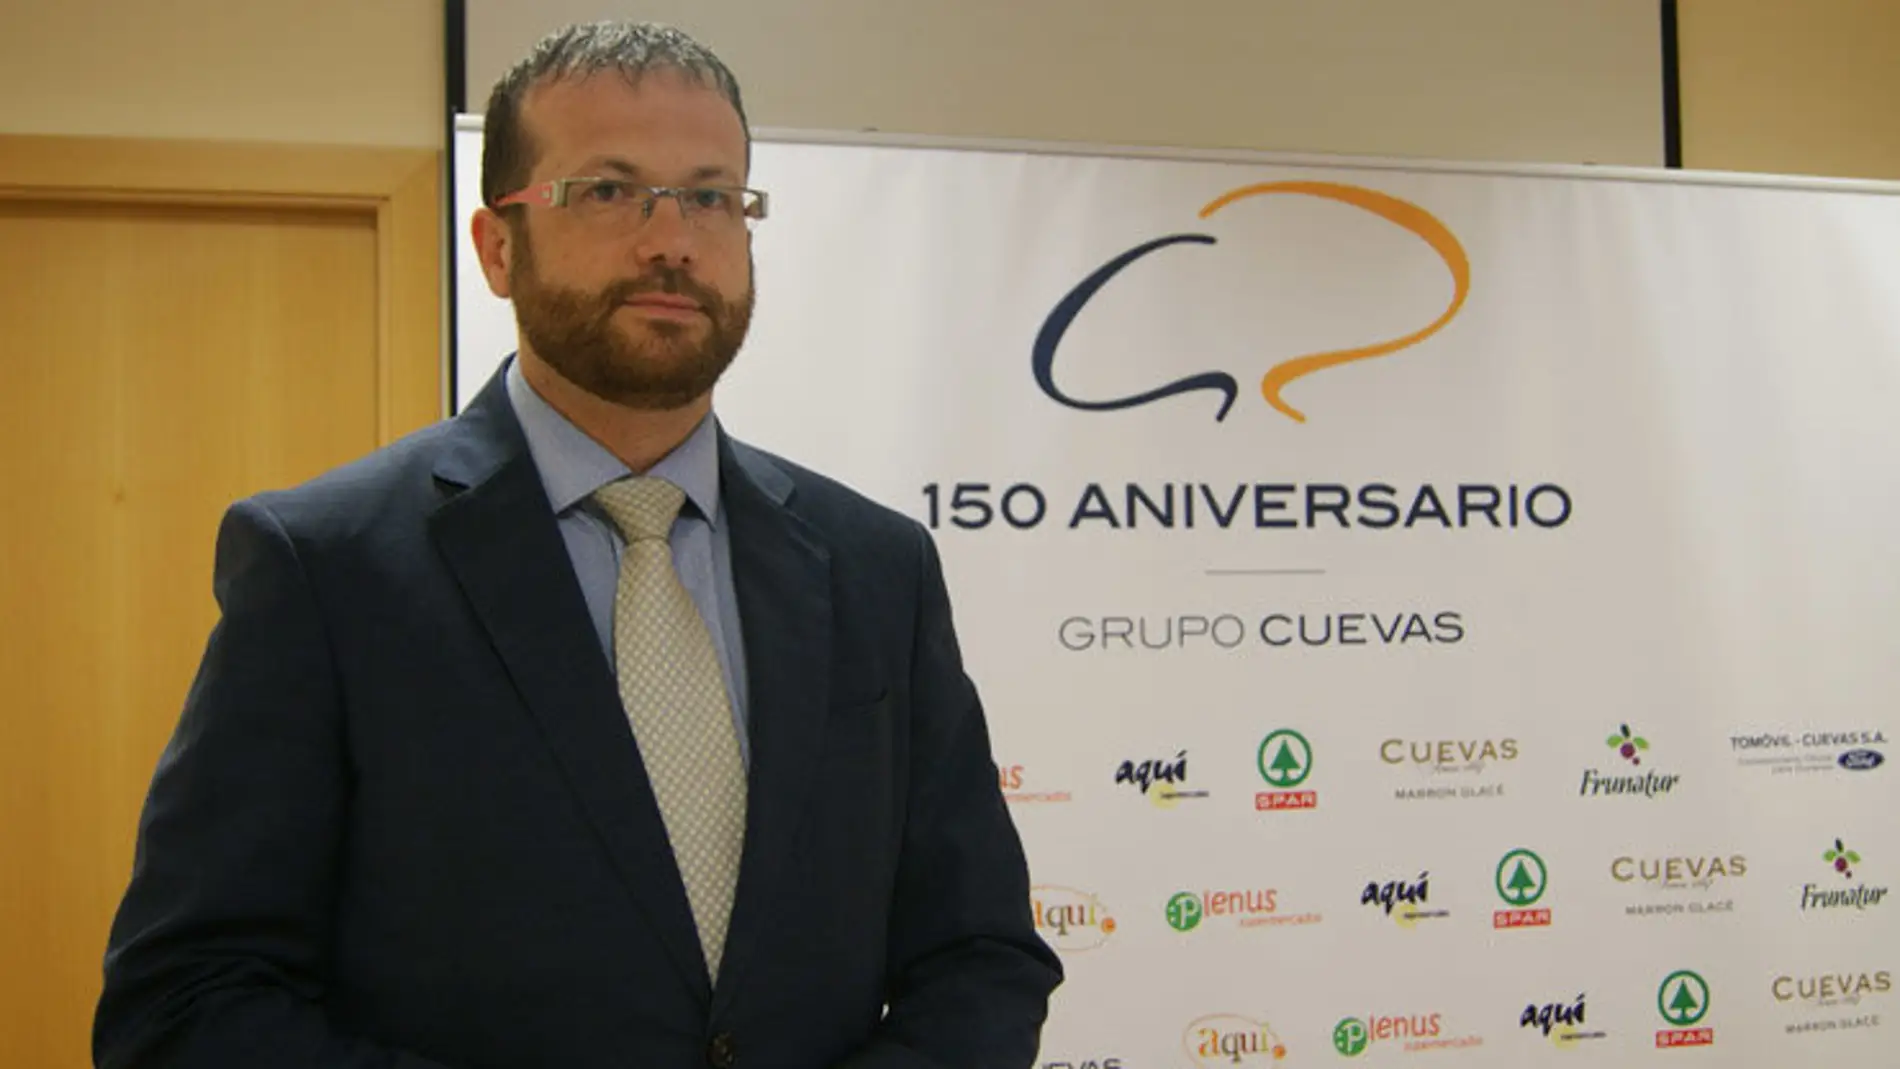 Artur Yuste, Director general de Grupo Cuevas